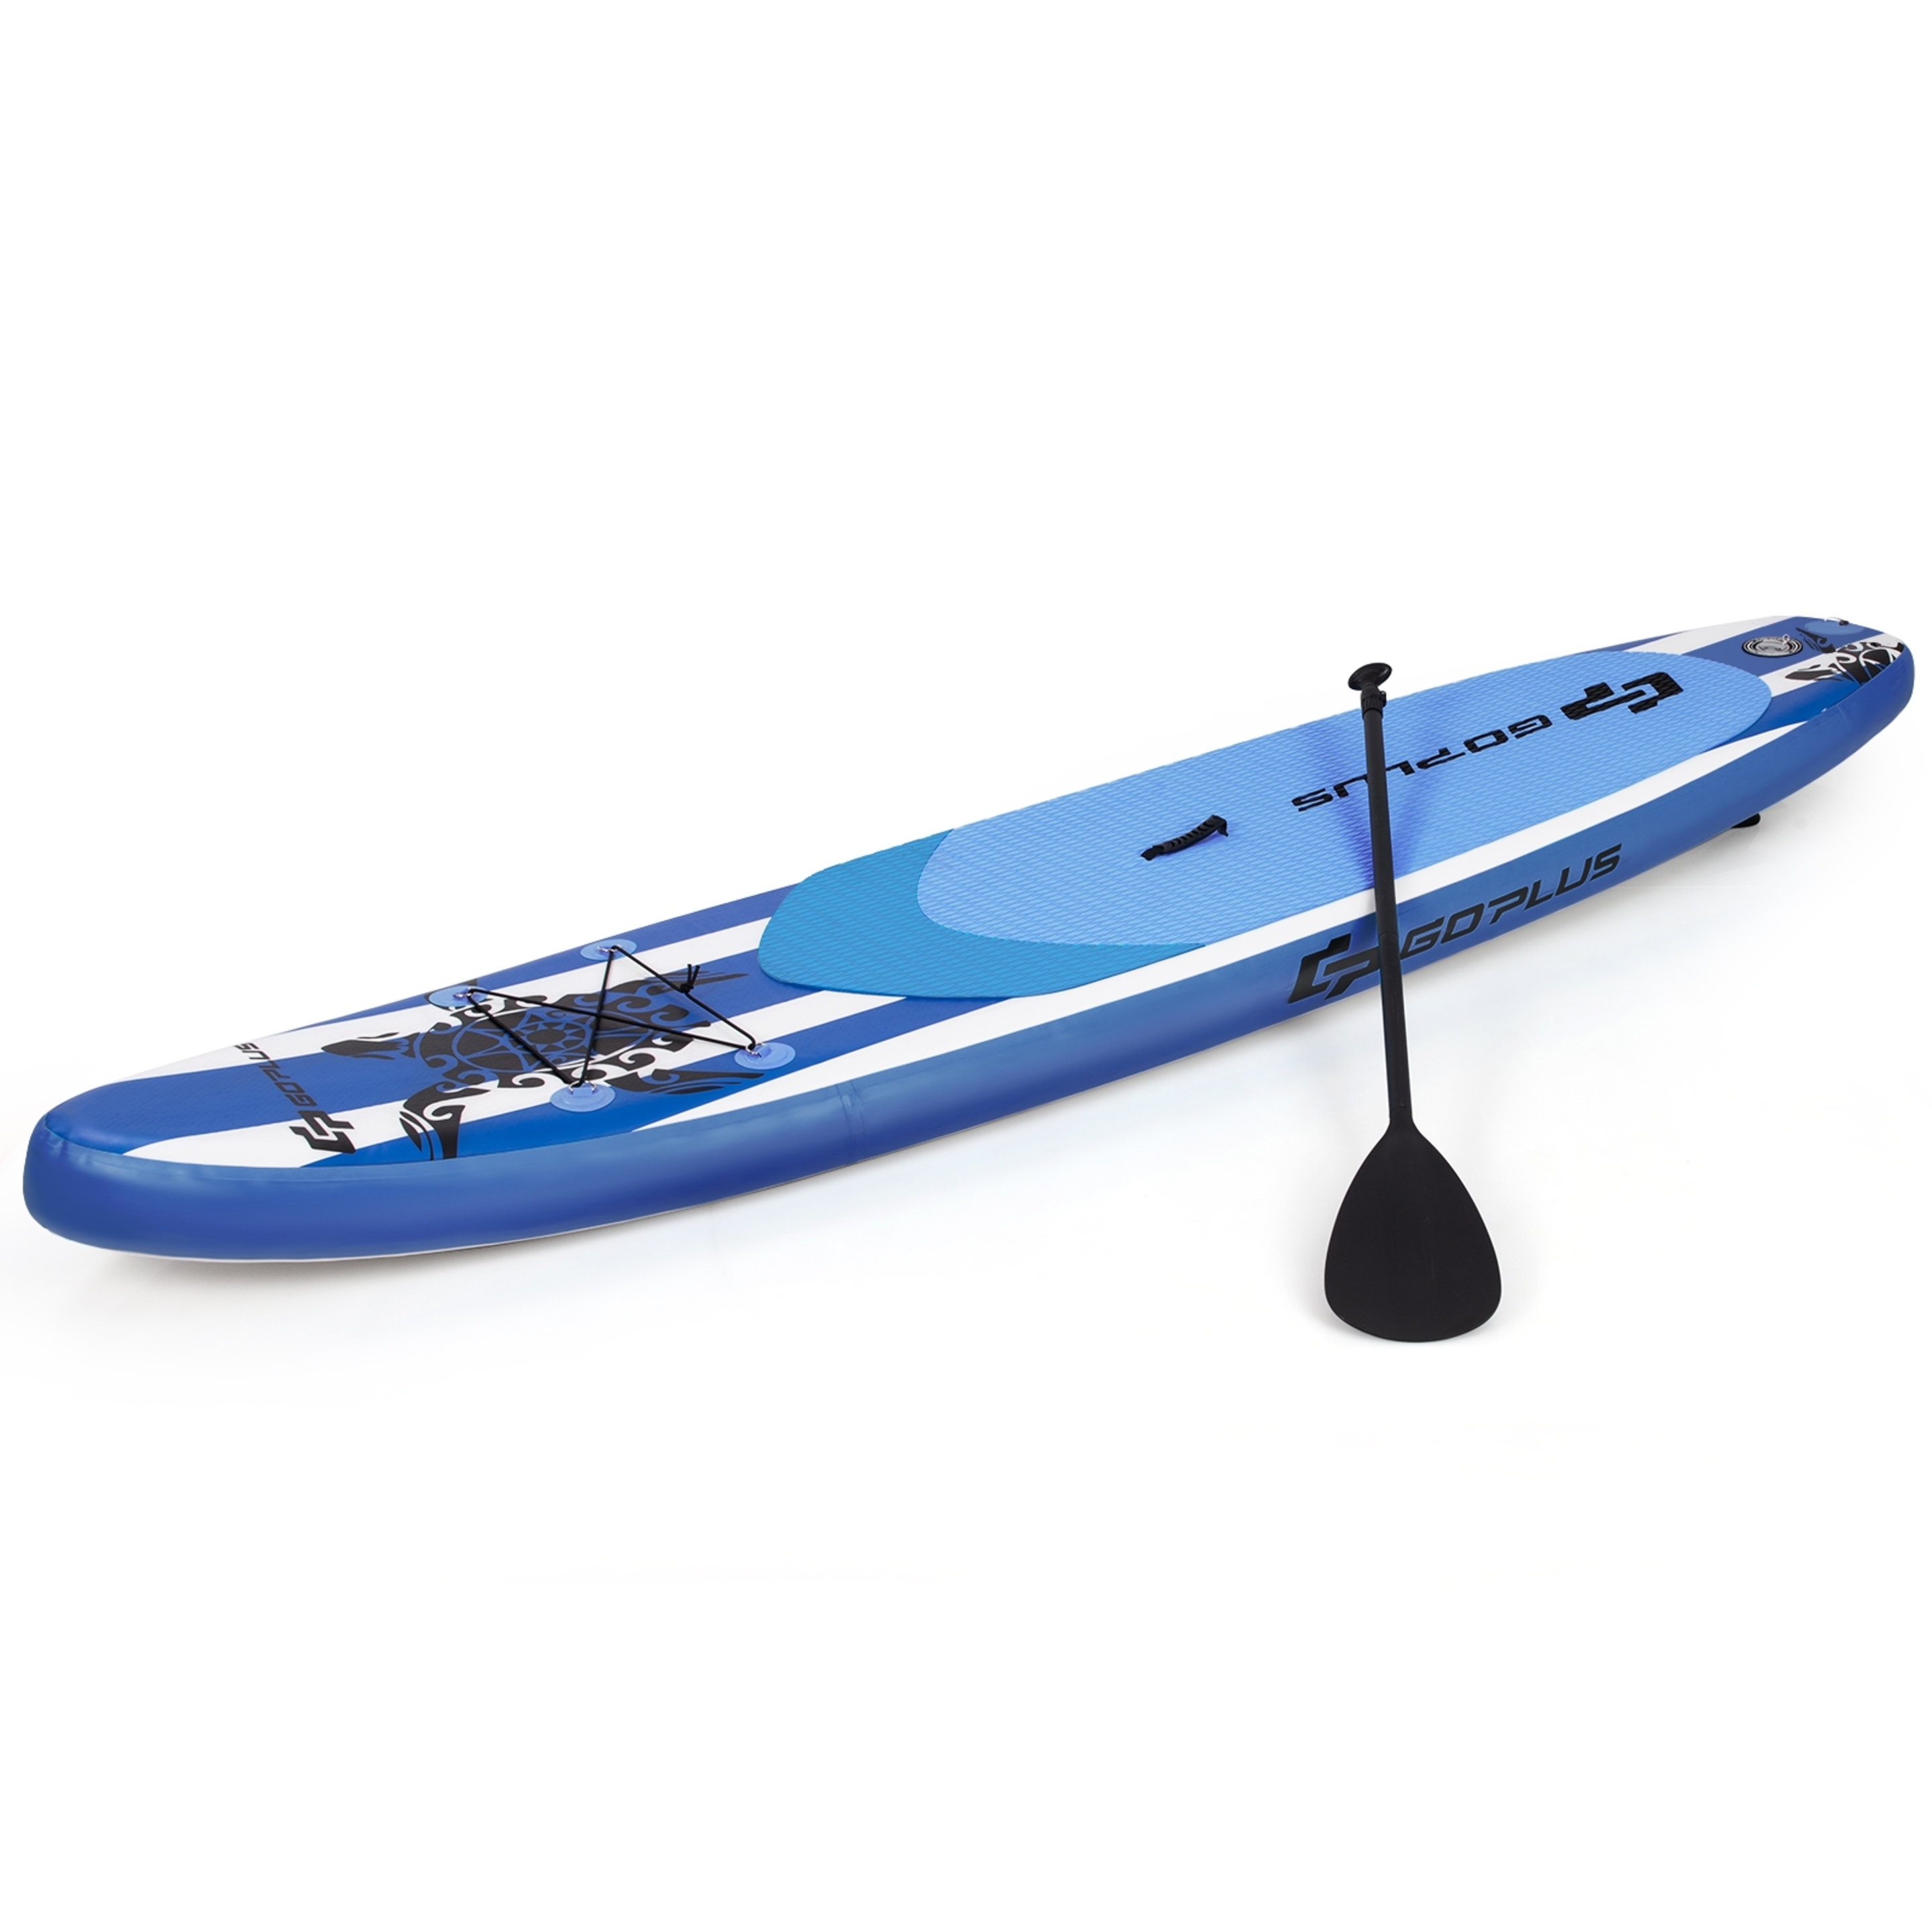 Costway Tabla Inflable De Paddle Tabla Sup Tabla De Surf Kit - Azul - Tabla De Surf  MKP